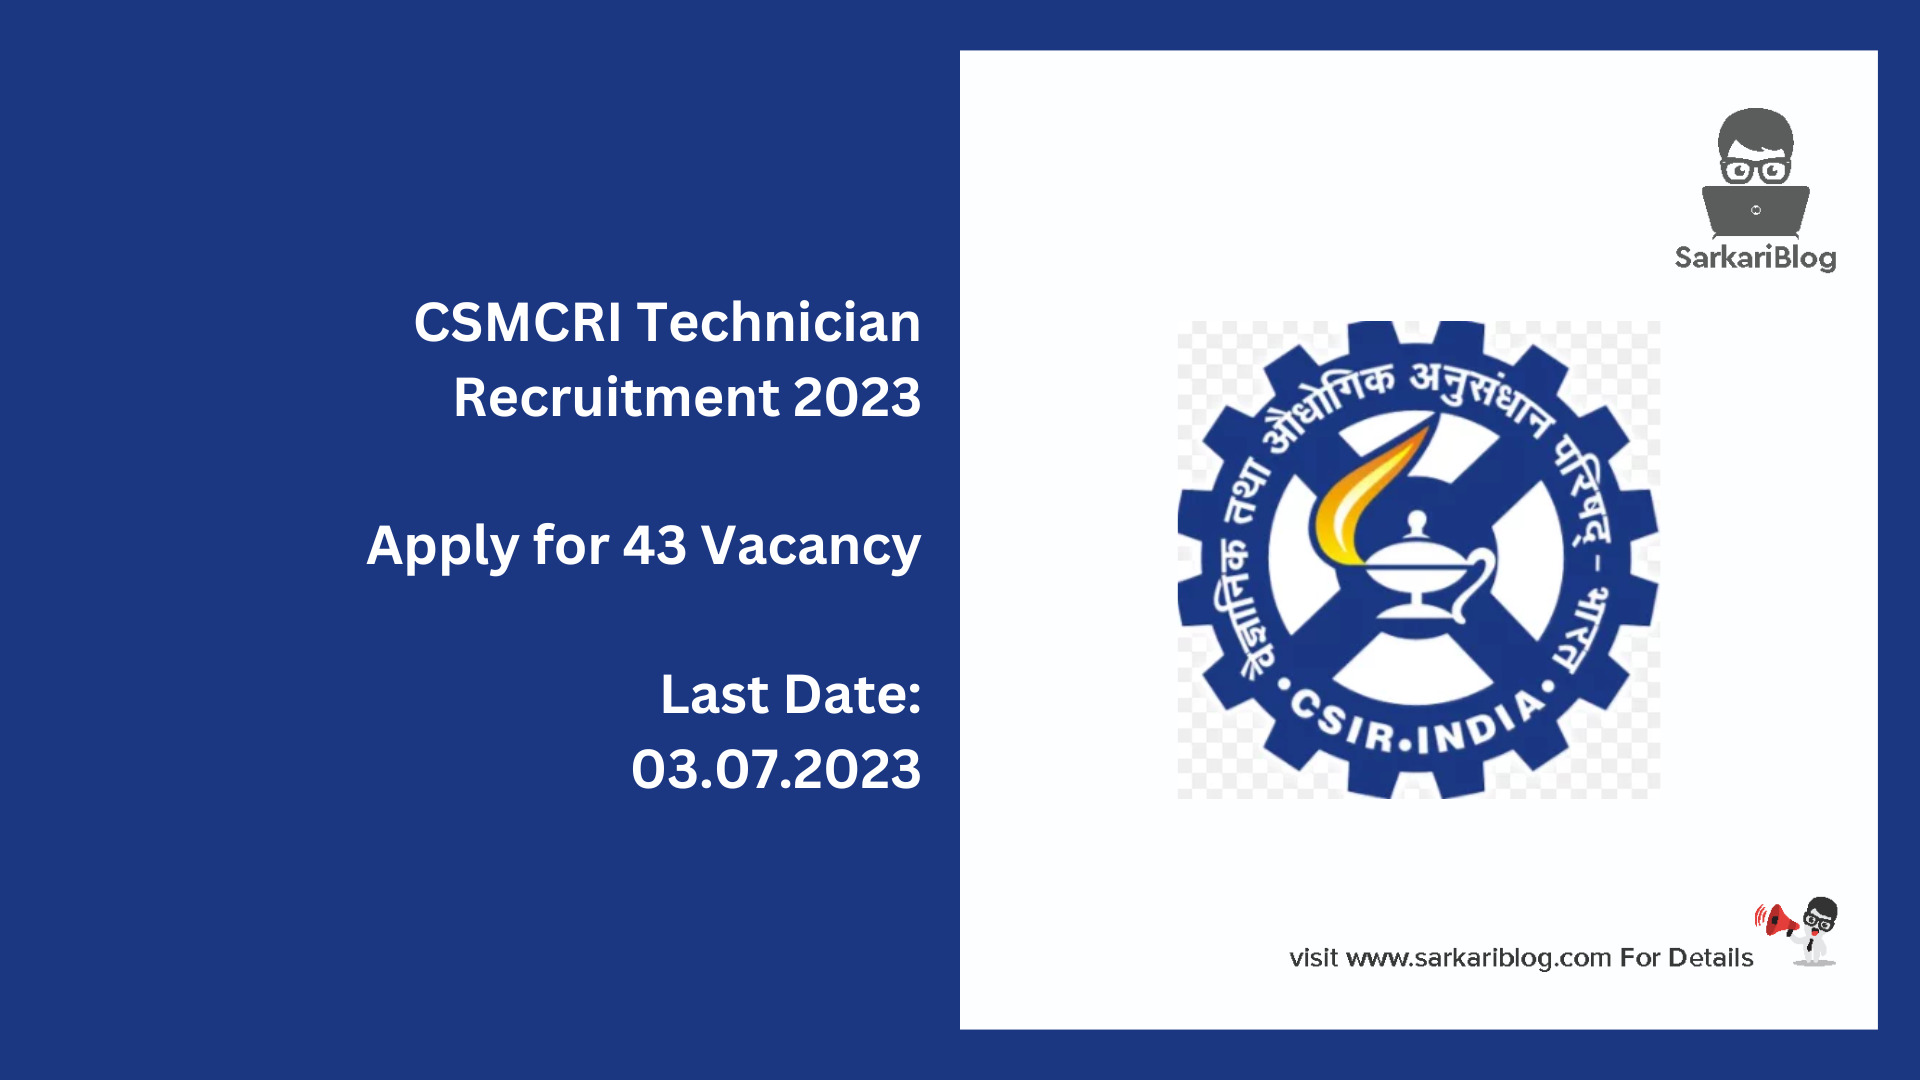 CSMCRI Technician Recruitment 2023